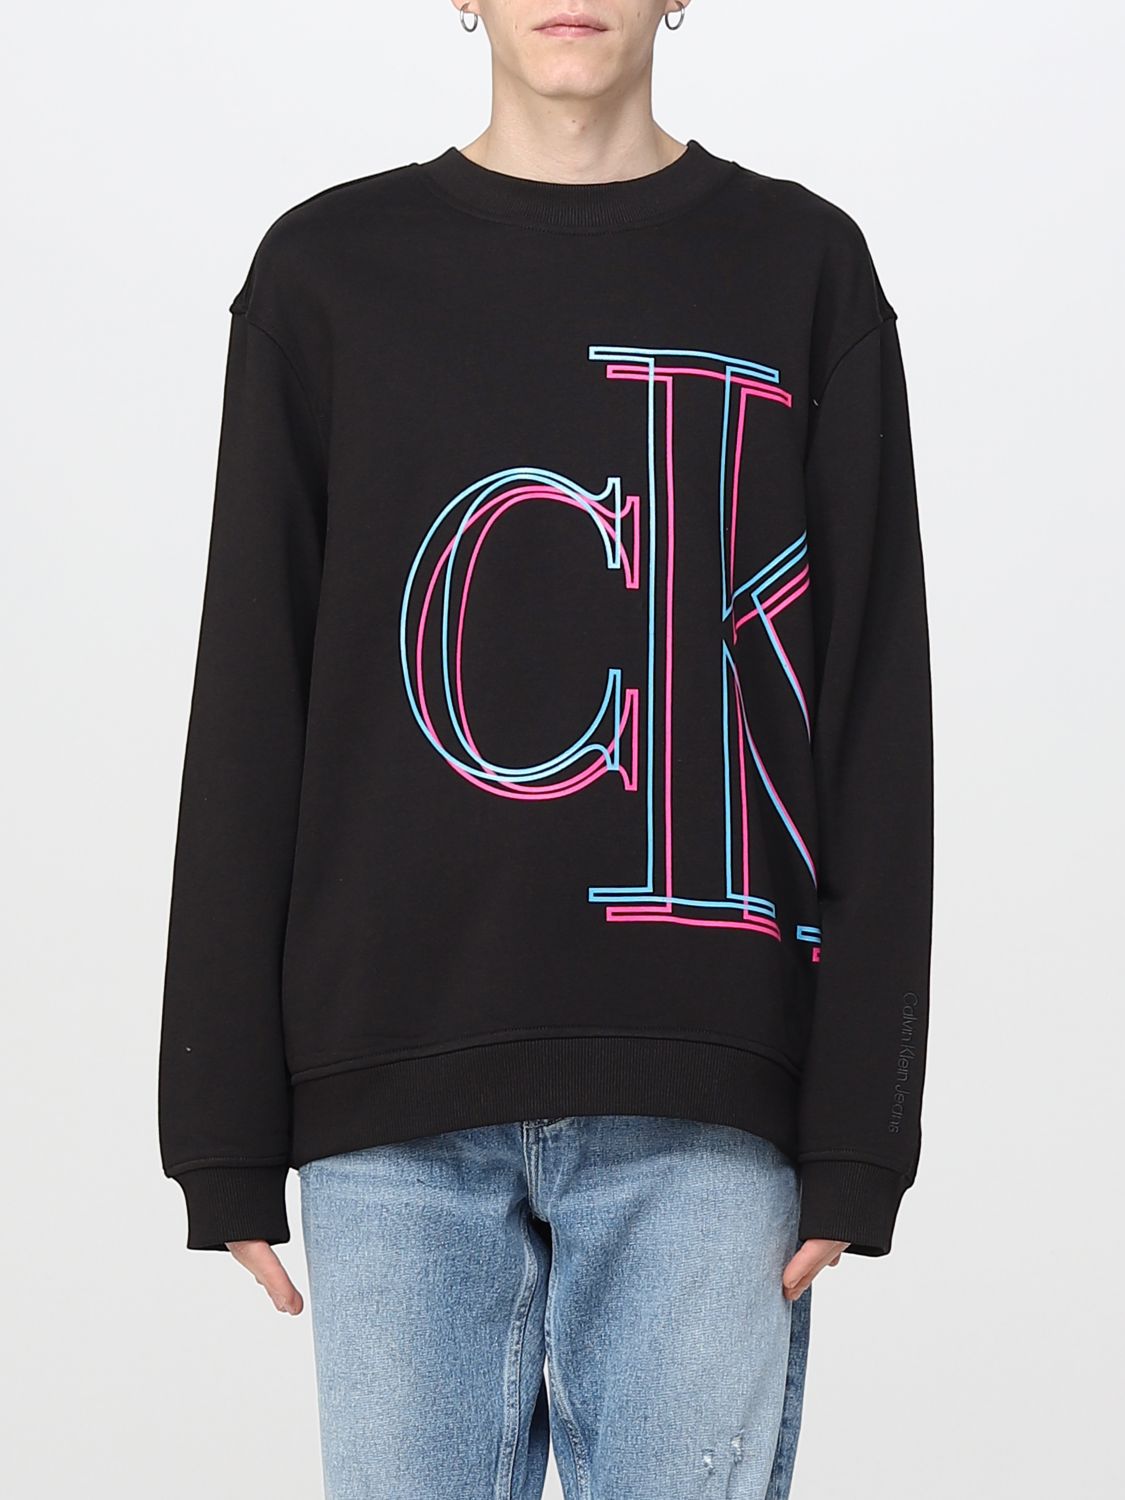 CALVIN KLEIN JEANS: crewneck sweatshirt - Black | Calvin Klein Jeans ...